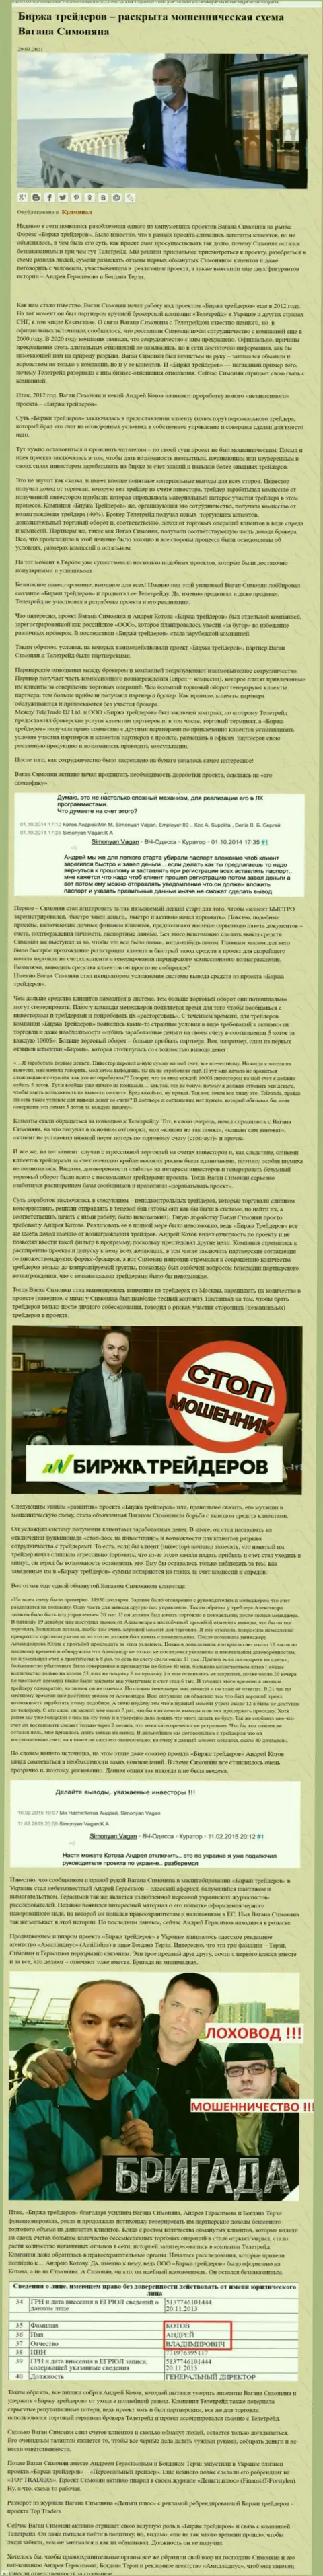 Рекламой компании Б-Трейдерс Ру, тесно связанной с ворами ТелеТрейд, тоже был занят Богдан Терзи